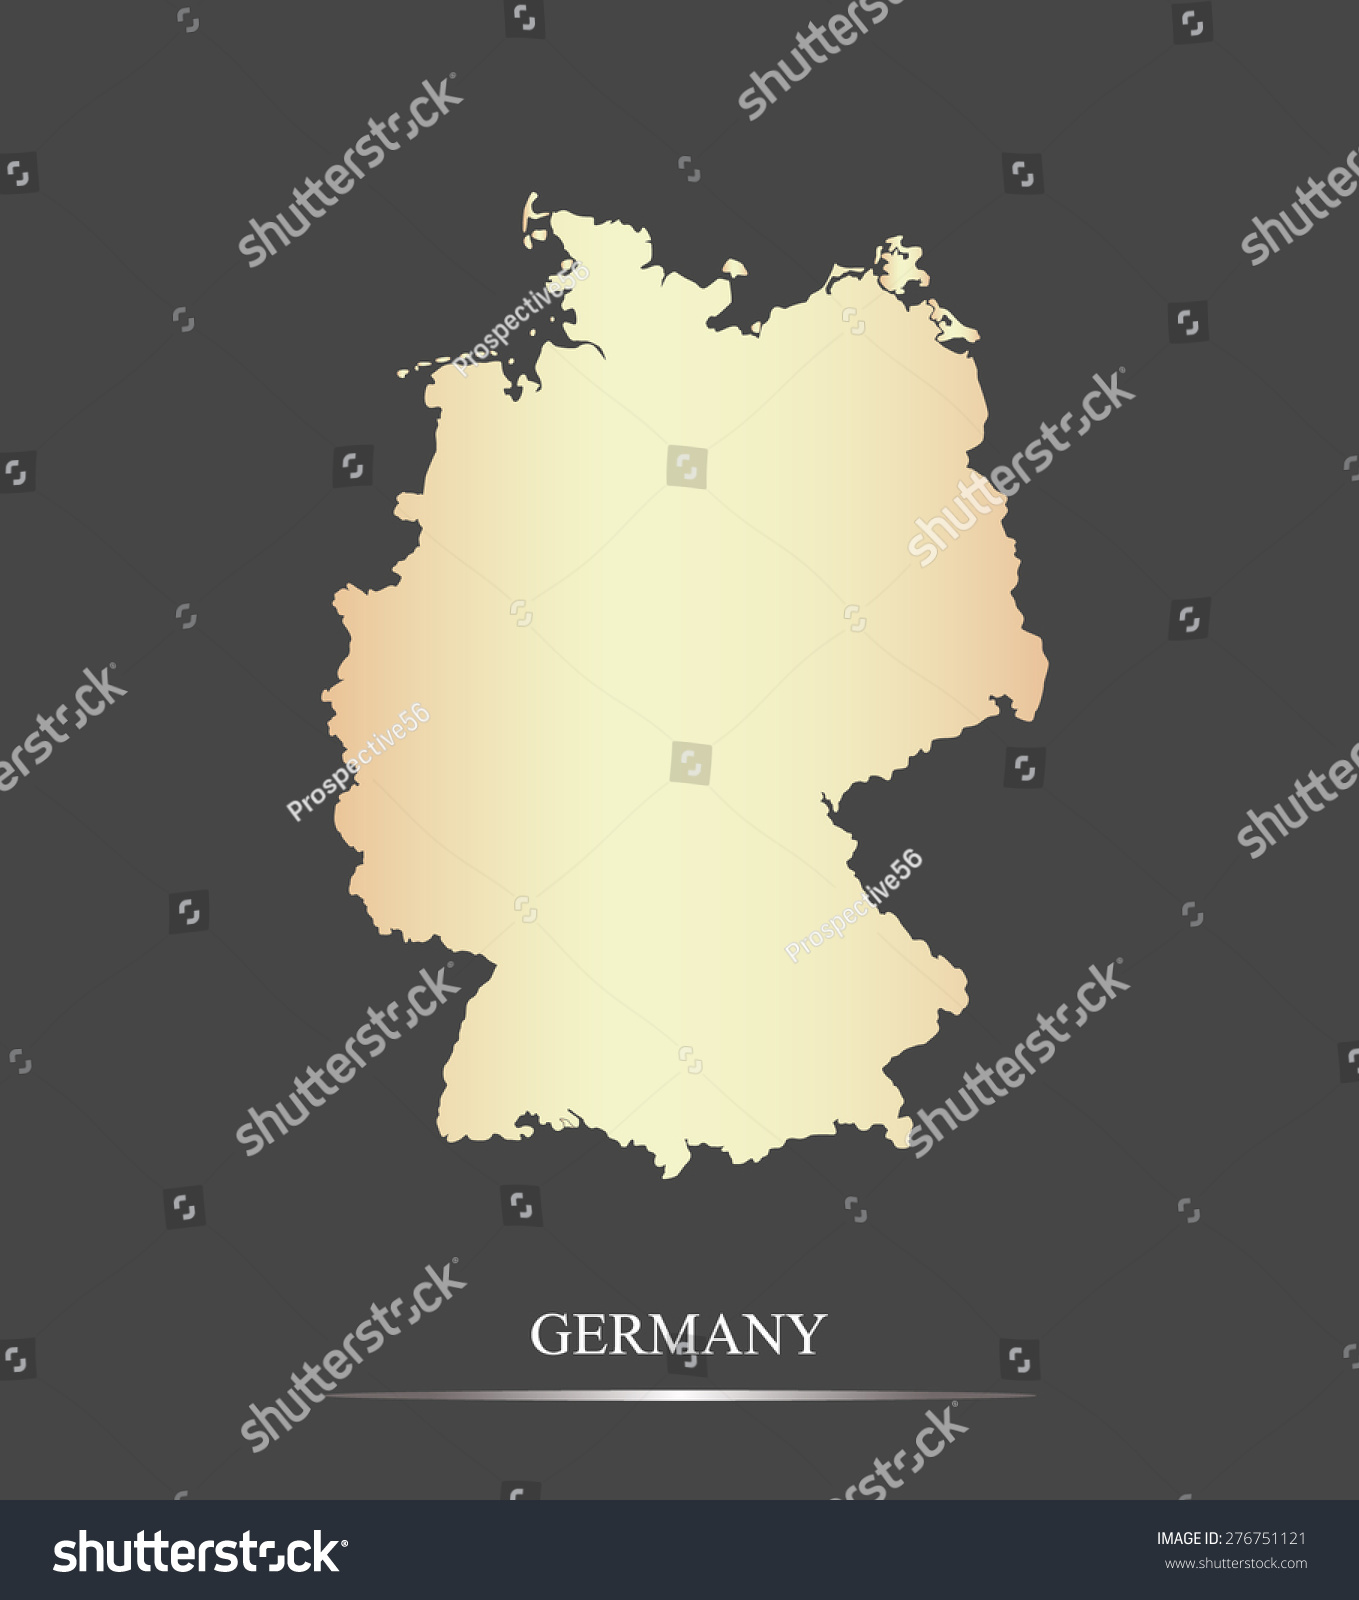 德国地图轮廓在抽象的黑白设计中,矢量地图的